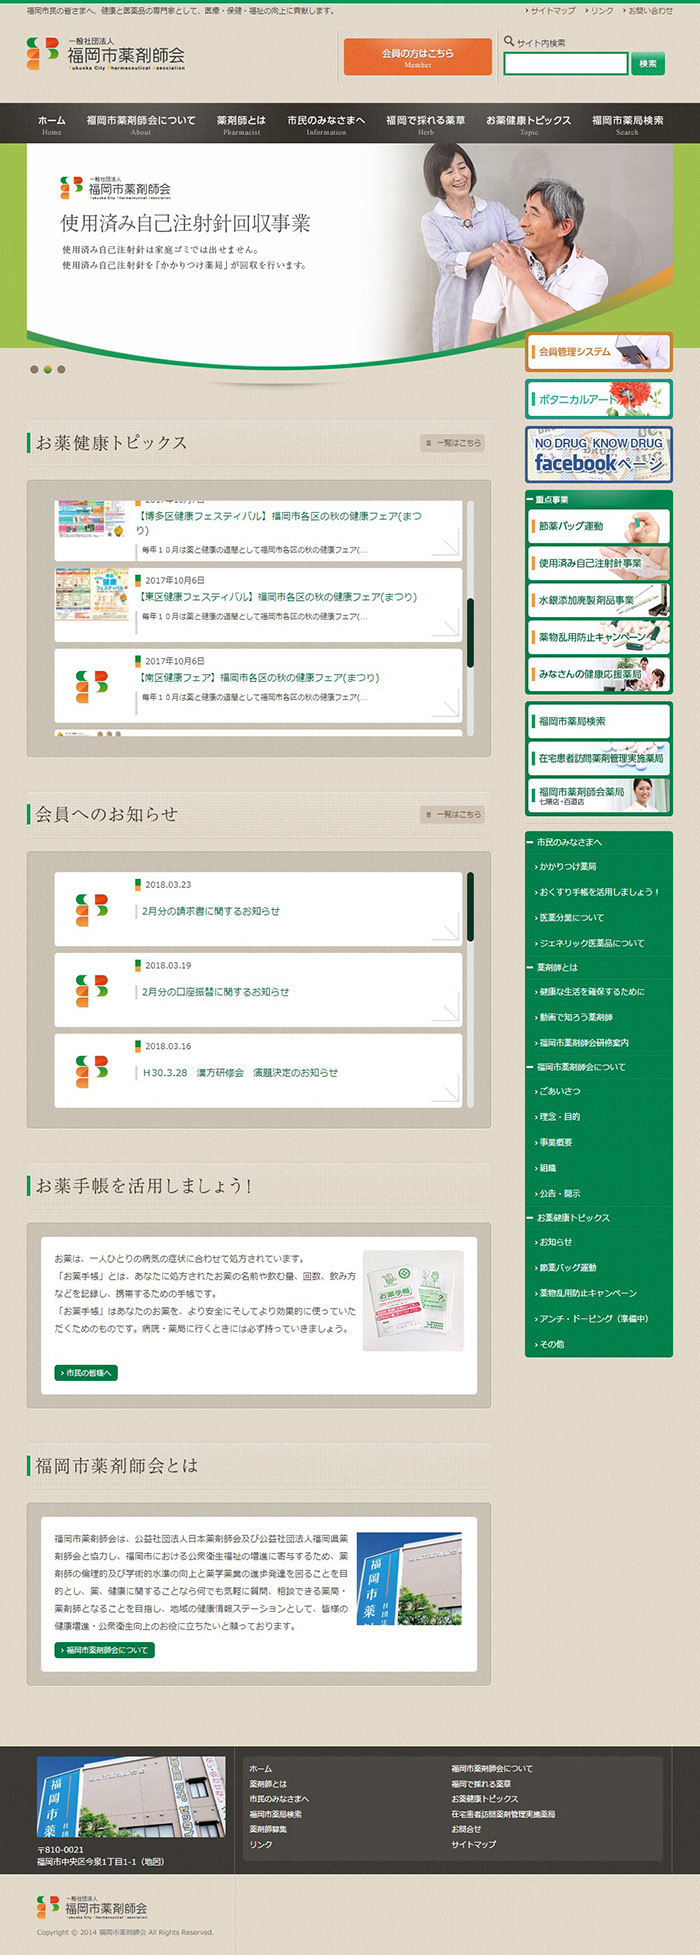 福岡市薬剤師会様ホームページ制作実績 デスクトップイメージ